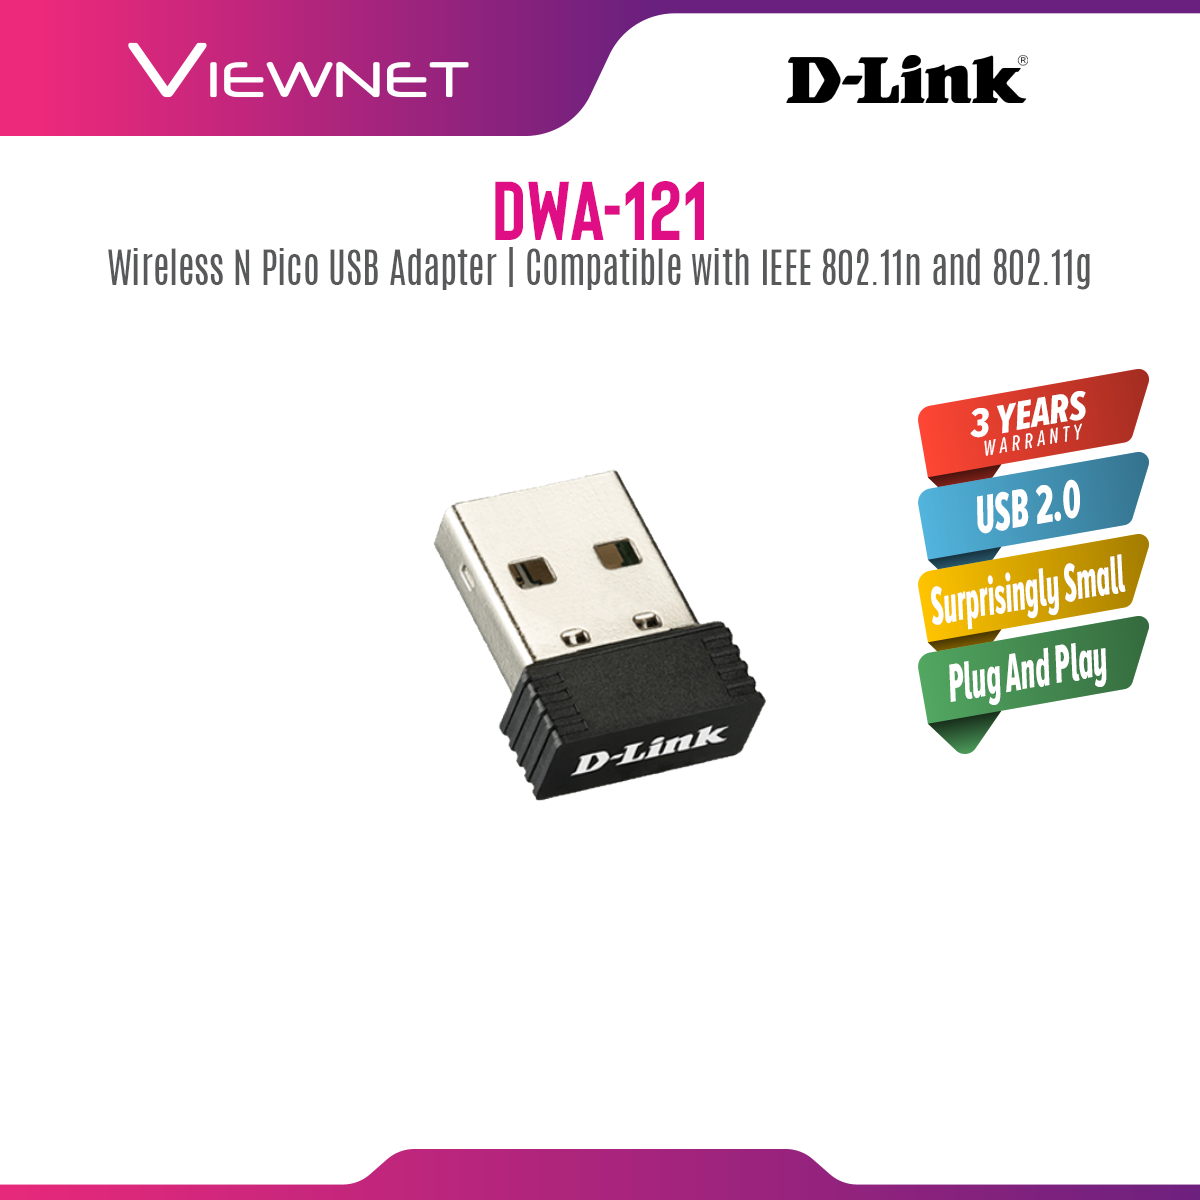 D-Link Wireless Pico USB Adapter, DWA-121 N150, 2.5GHz, USB 2.0, Wireless